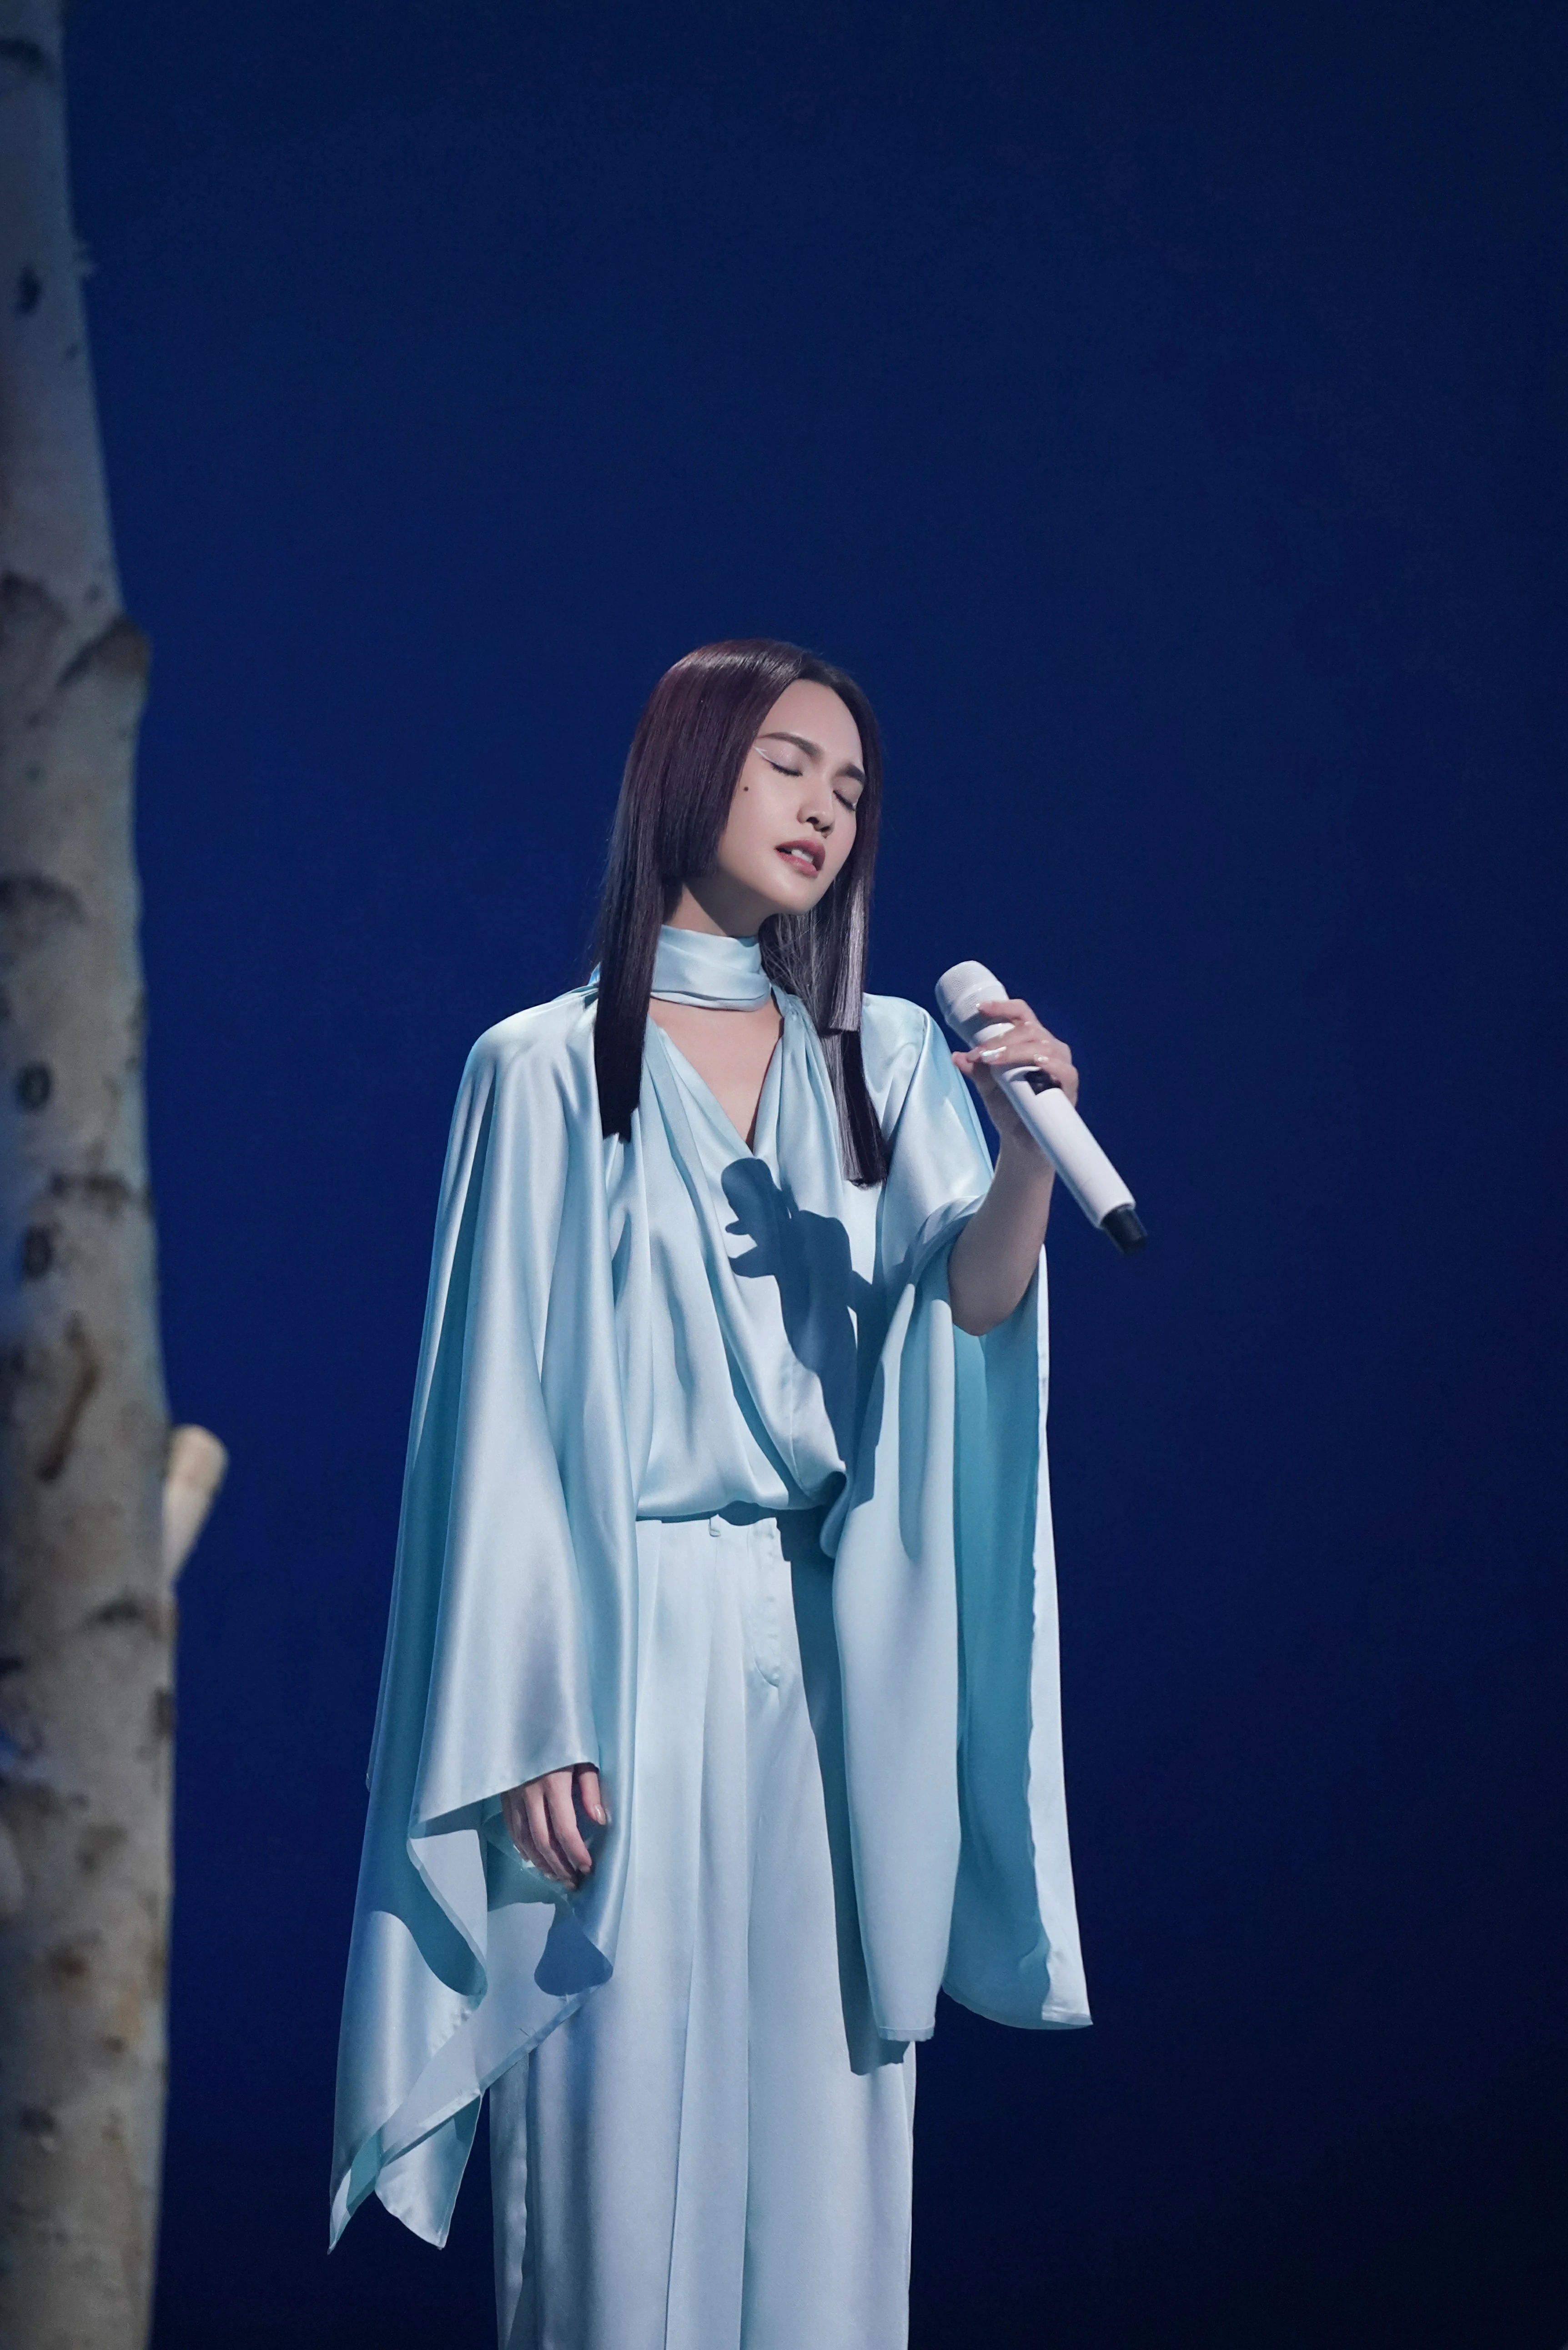 杨丞琳亮相本周《闪光的乐队》 挑染公主切造型带来《天堂》舞台,19